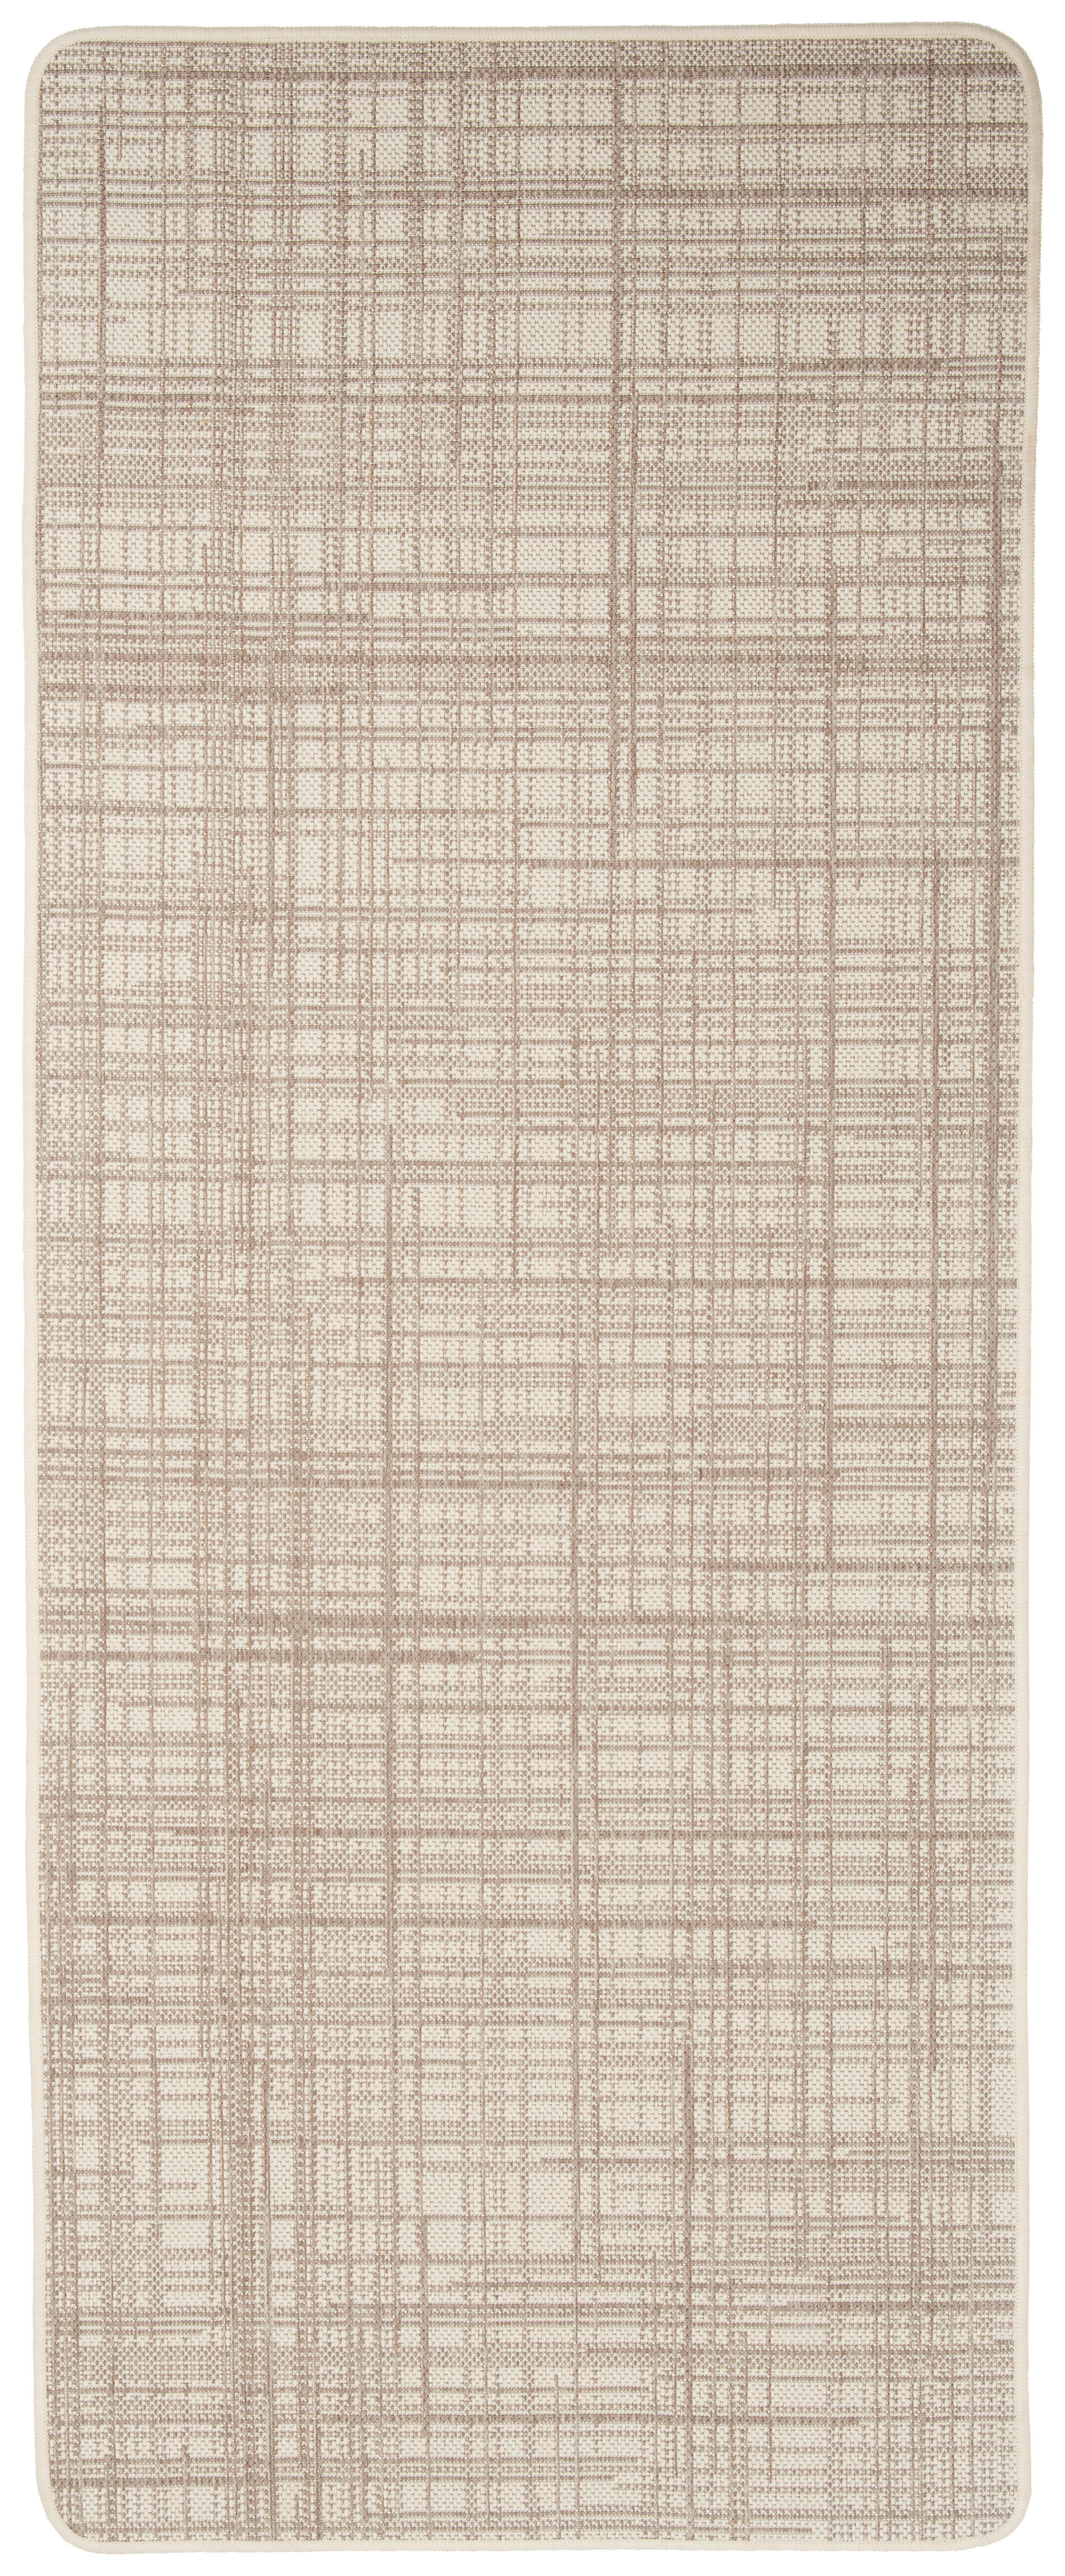 LÄUFER 67/200 cm Country  - Beige, KONVENTIONELL, Textil (67/200cm) - Boxxx